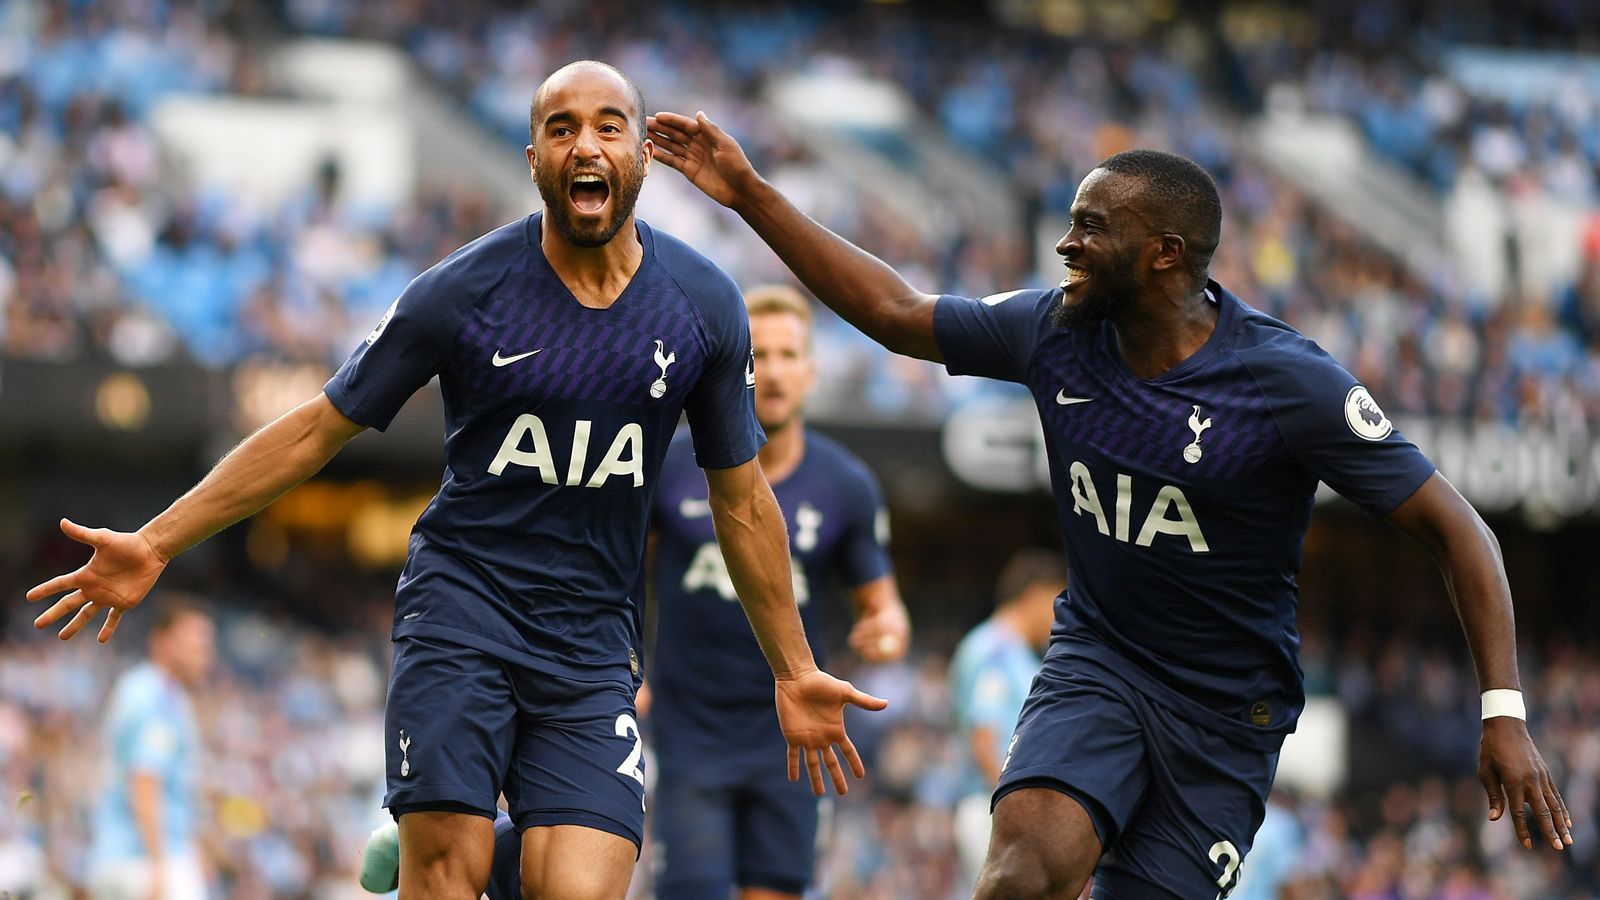 
                <strong>Topf 2: Tottenham Hotspur</strong><br>
                Vierter in EnglandGrößter CL-Erfolg: Finale 2019
              